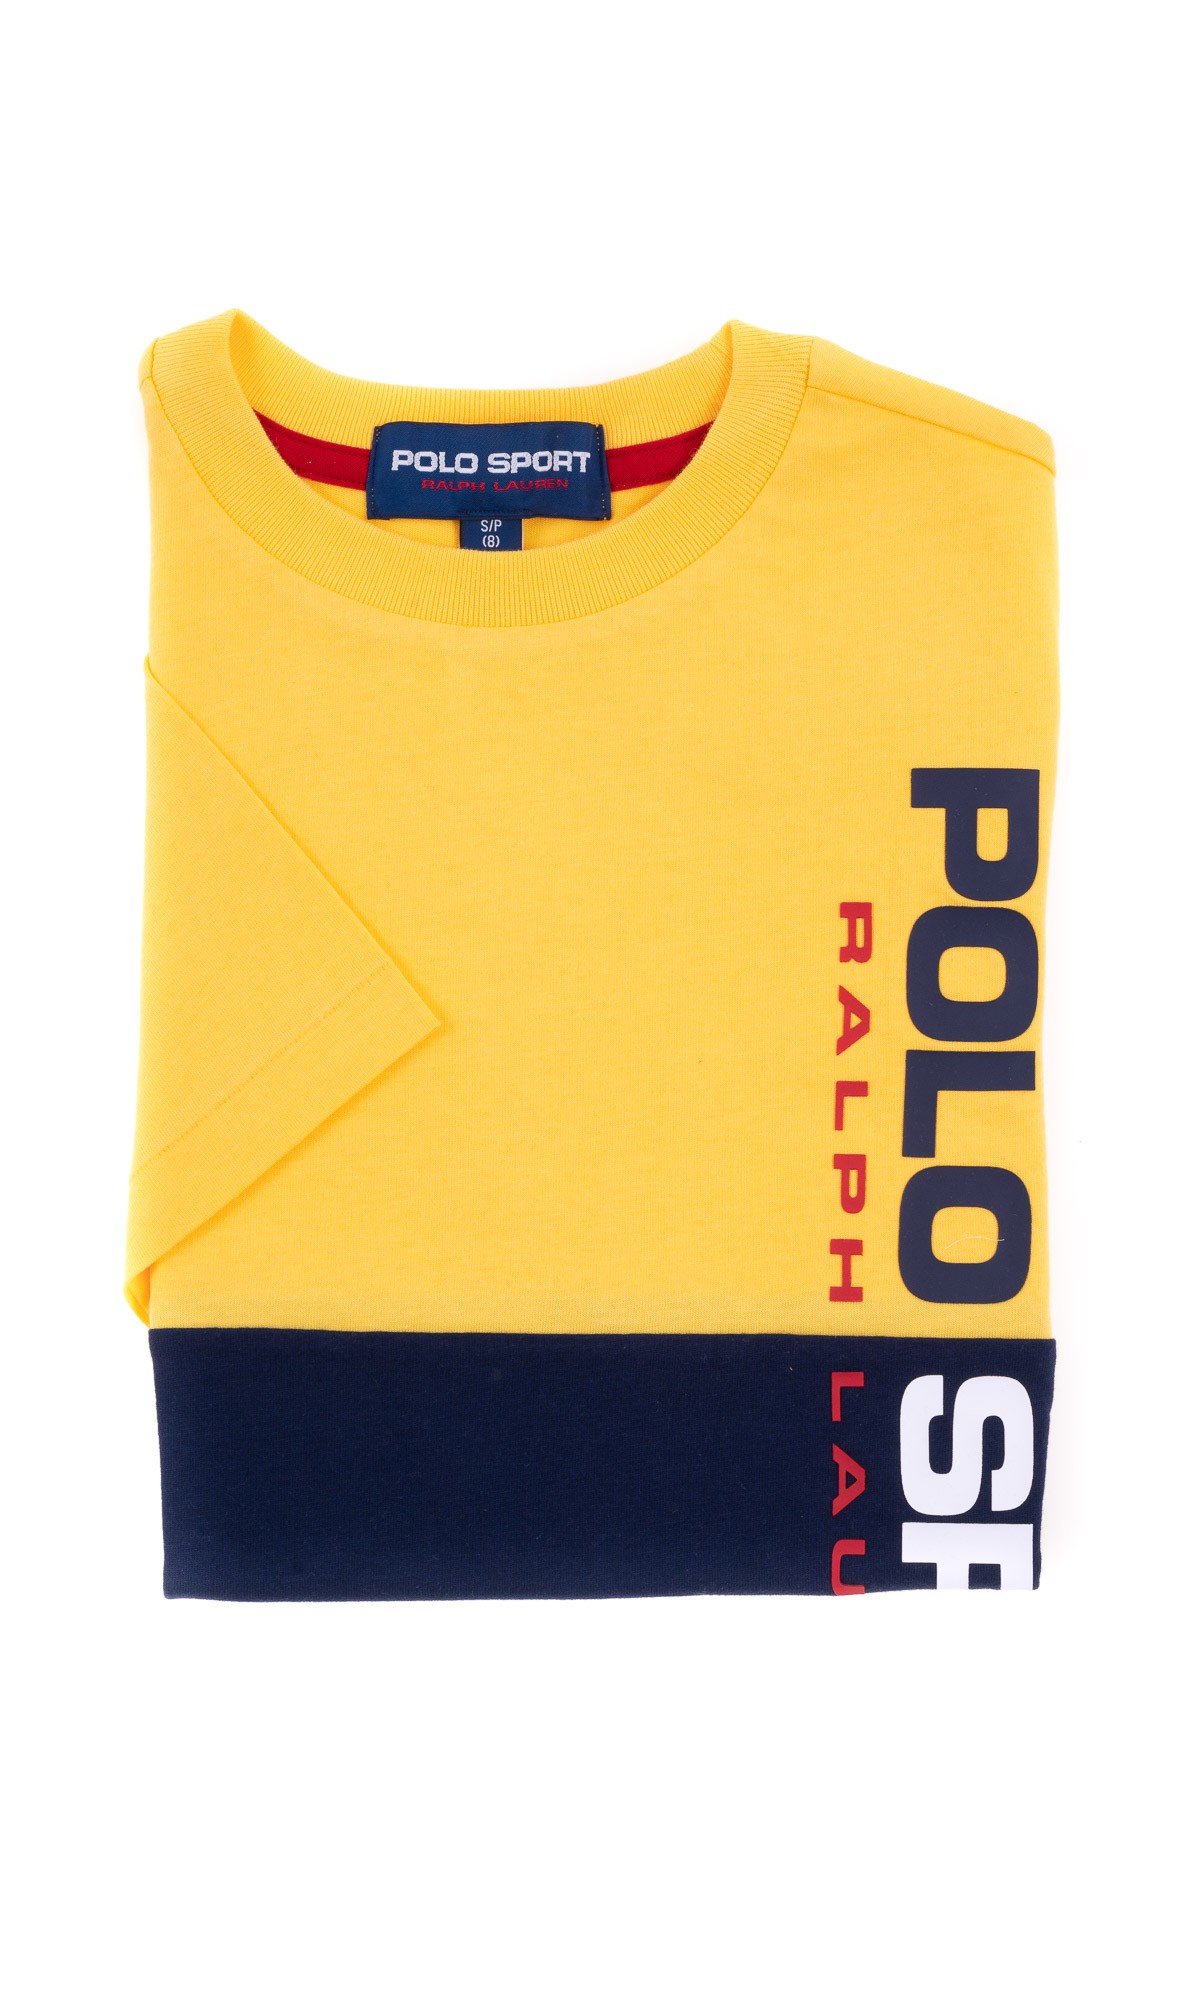 polo sport ralph lauren t shirt